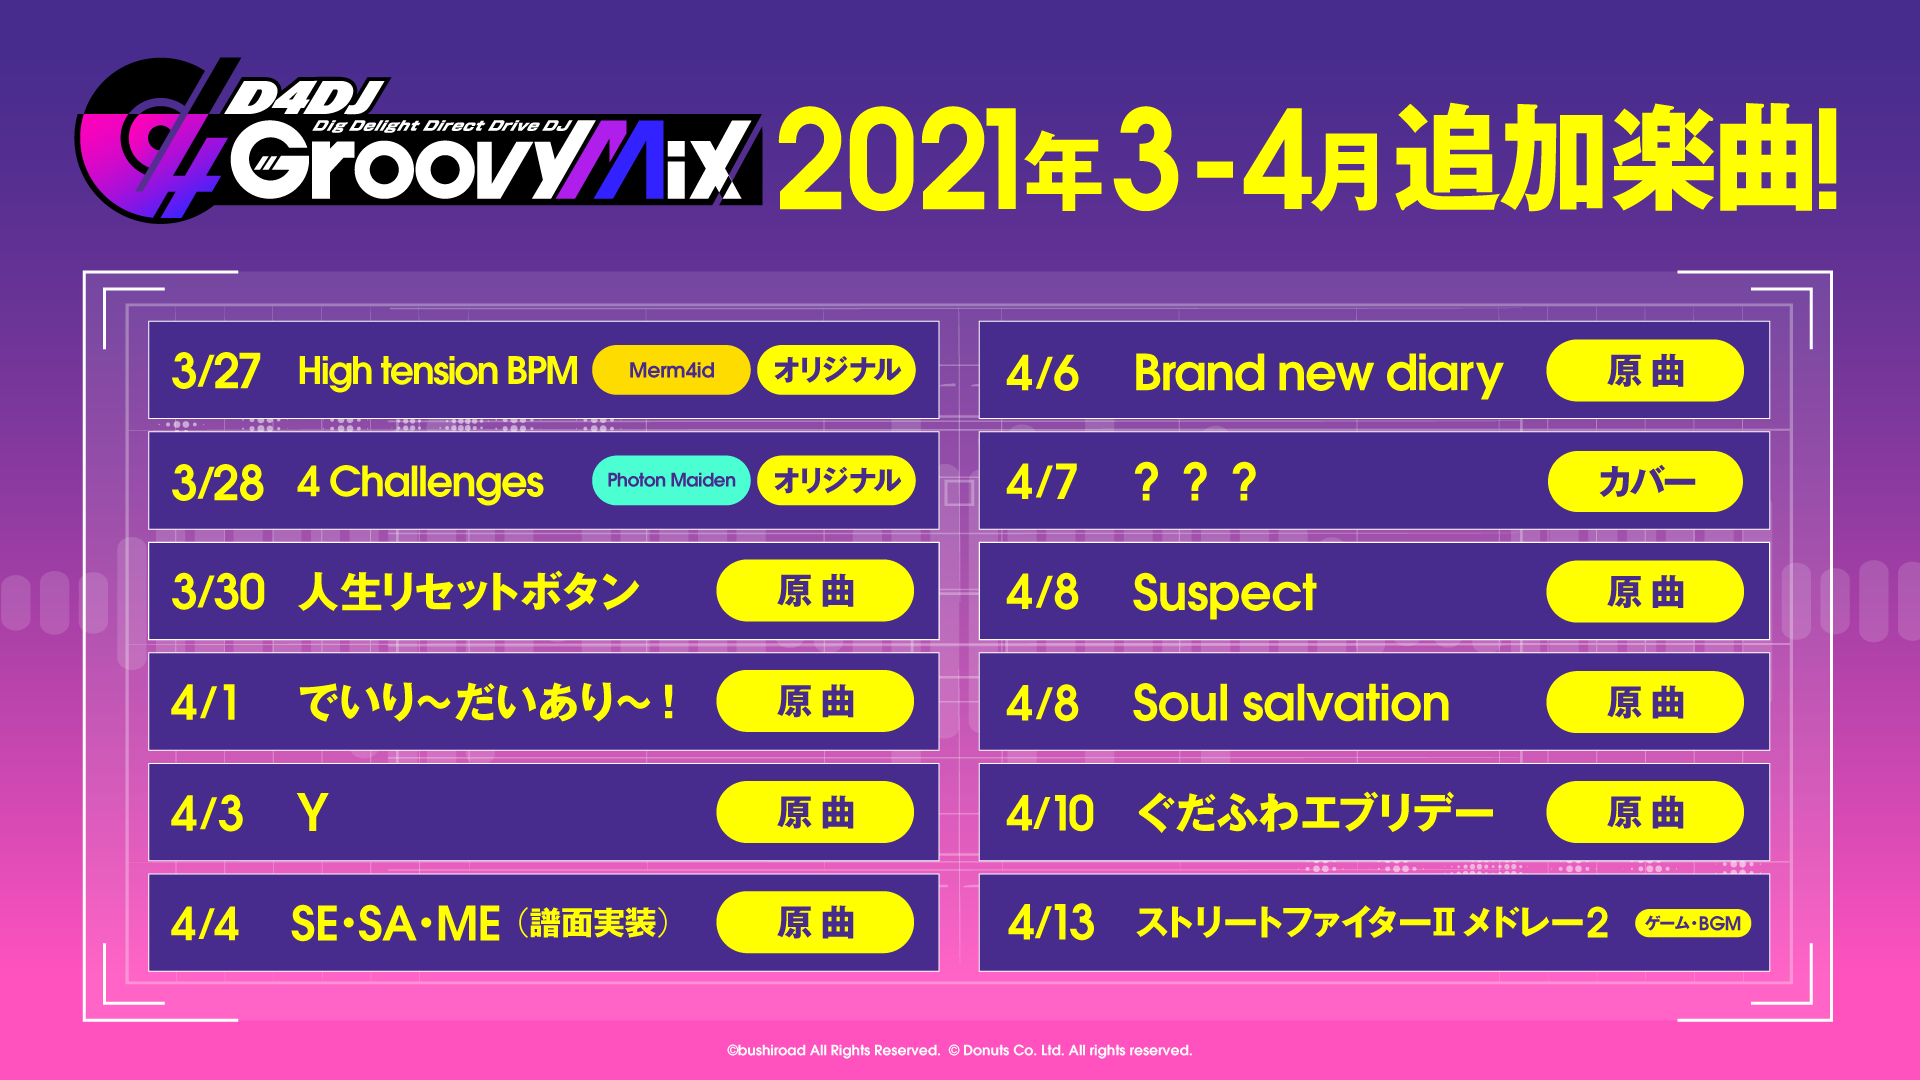 スマートフォン向けリズムゲーム D4dj Groovy Mix 4月の実装楽曲を一部発表 実装曲には 4月新番組の原曲も 株式会社ブシロードのプレスリリース